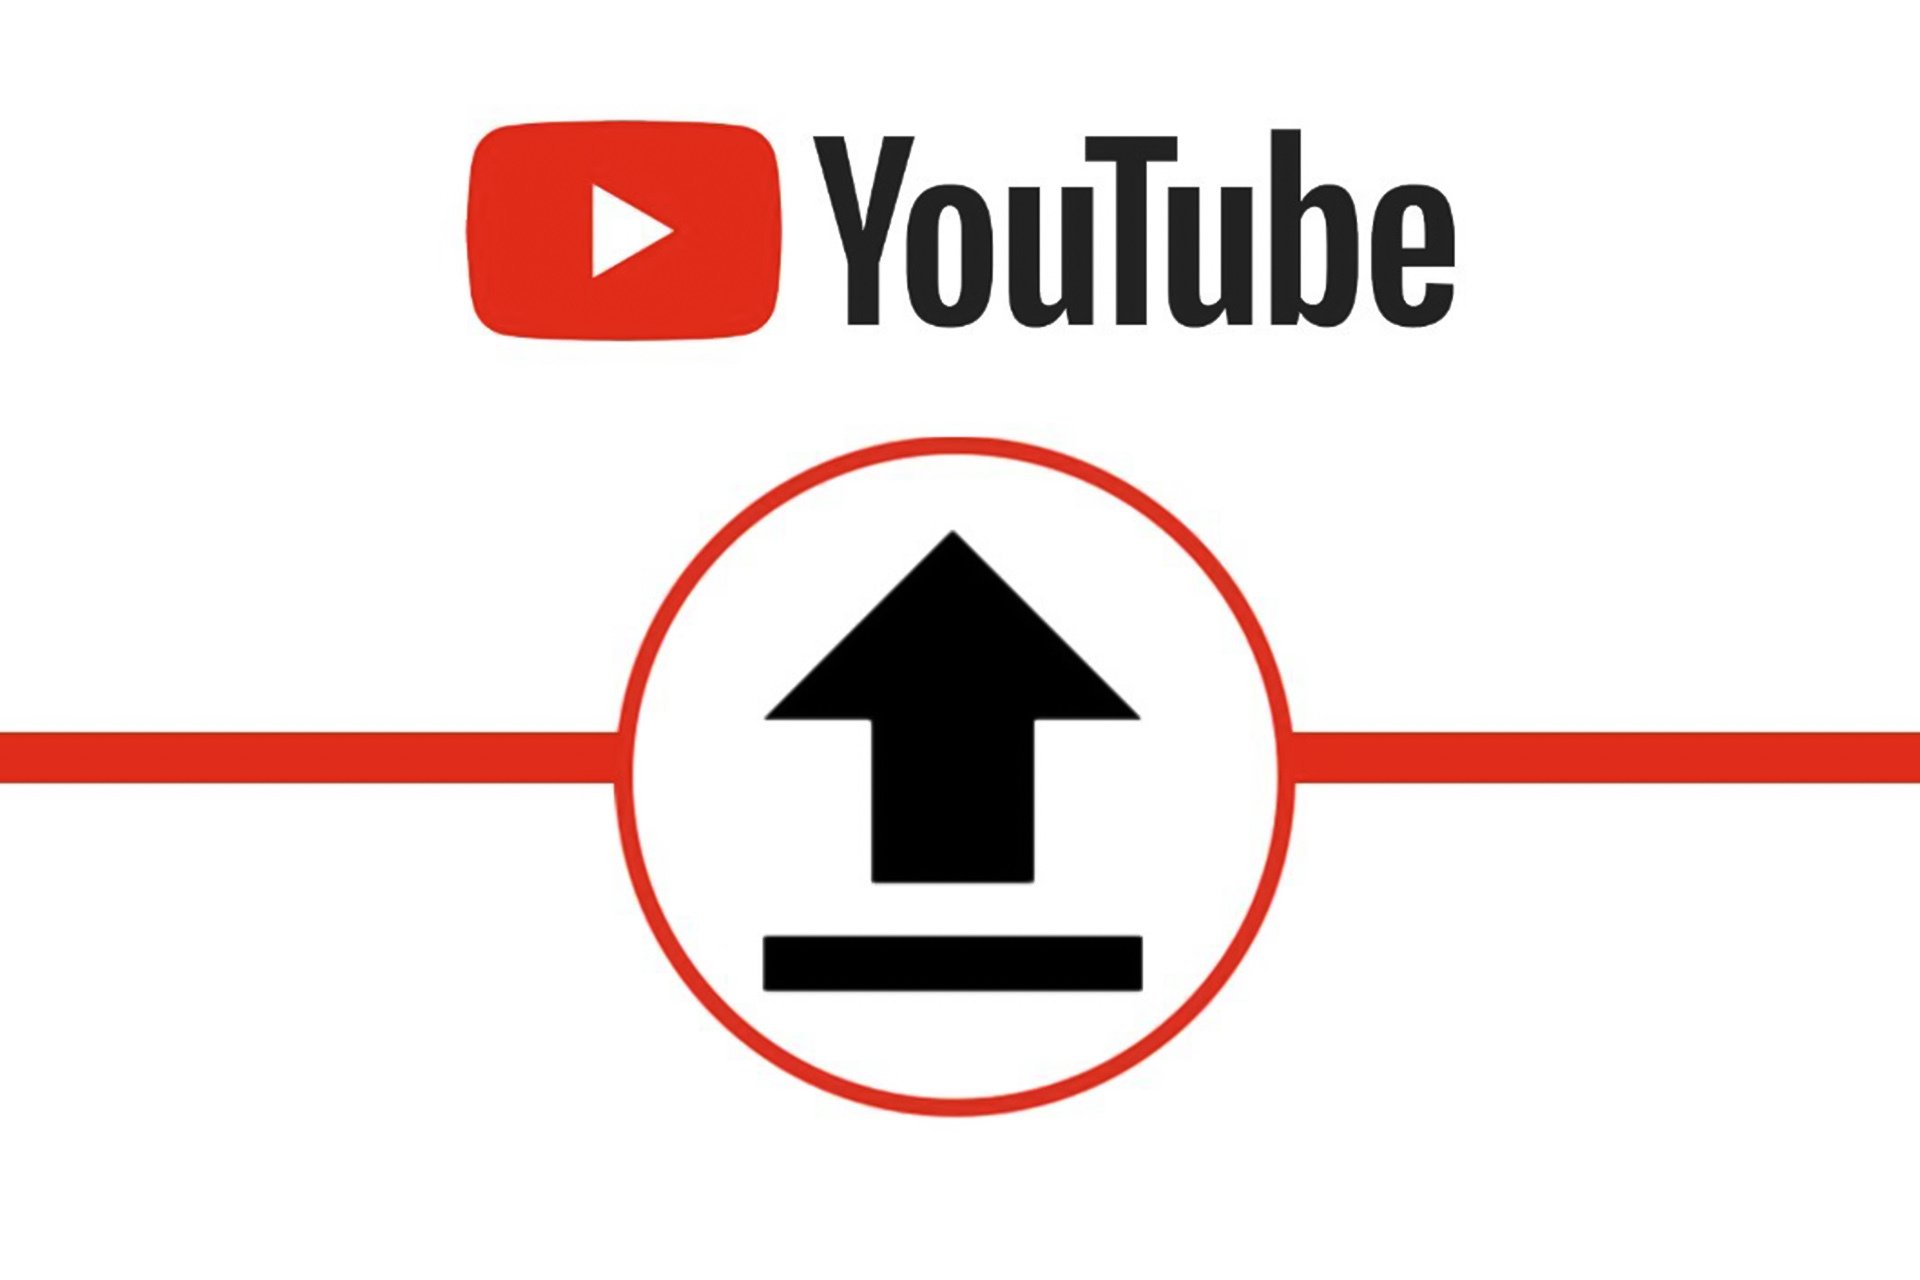 يوتيوب تستعد لإطلاق خاصية جديدة لتحميل الفيديوهات